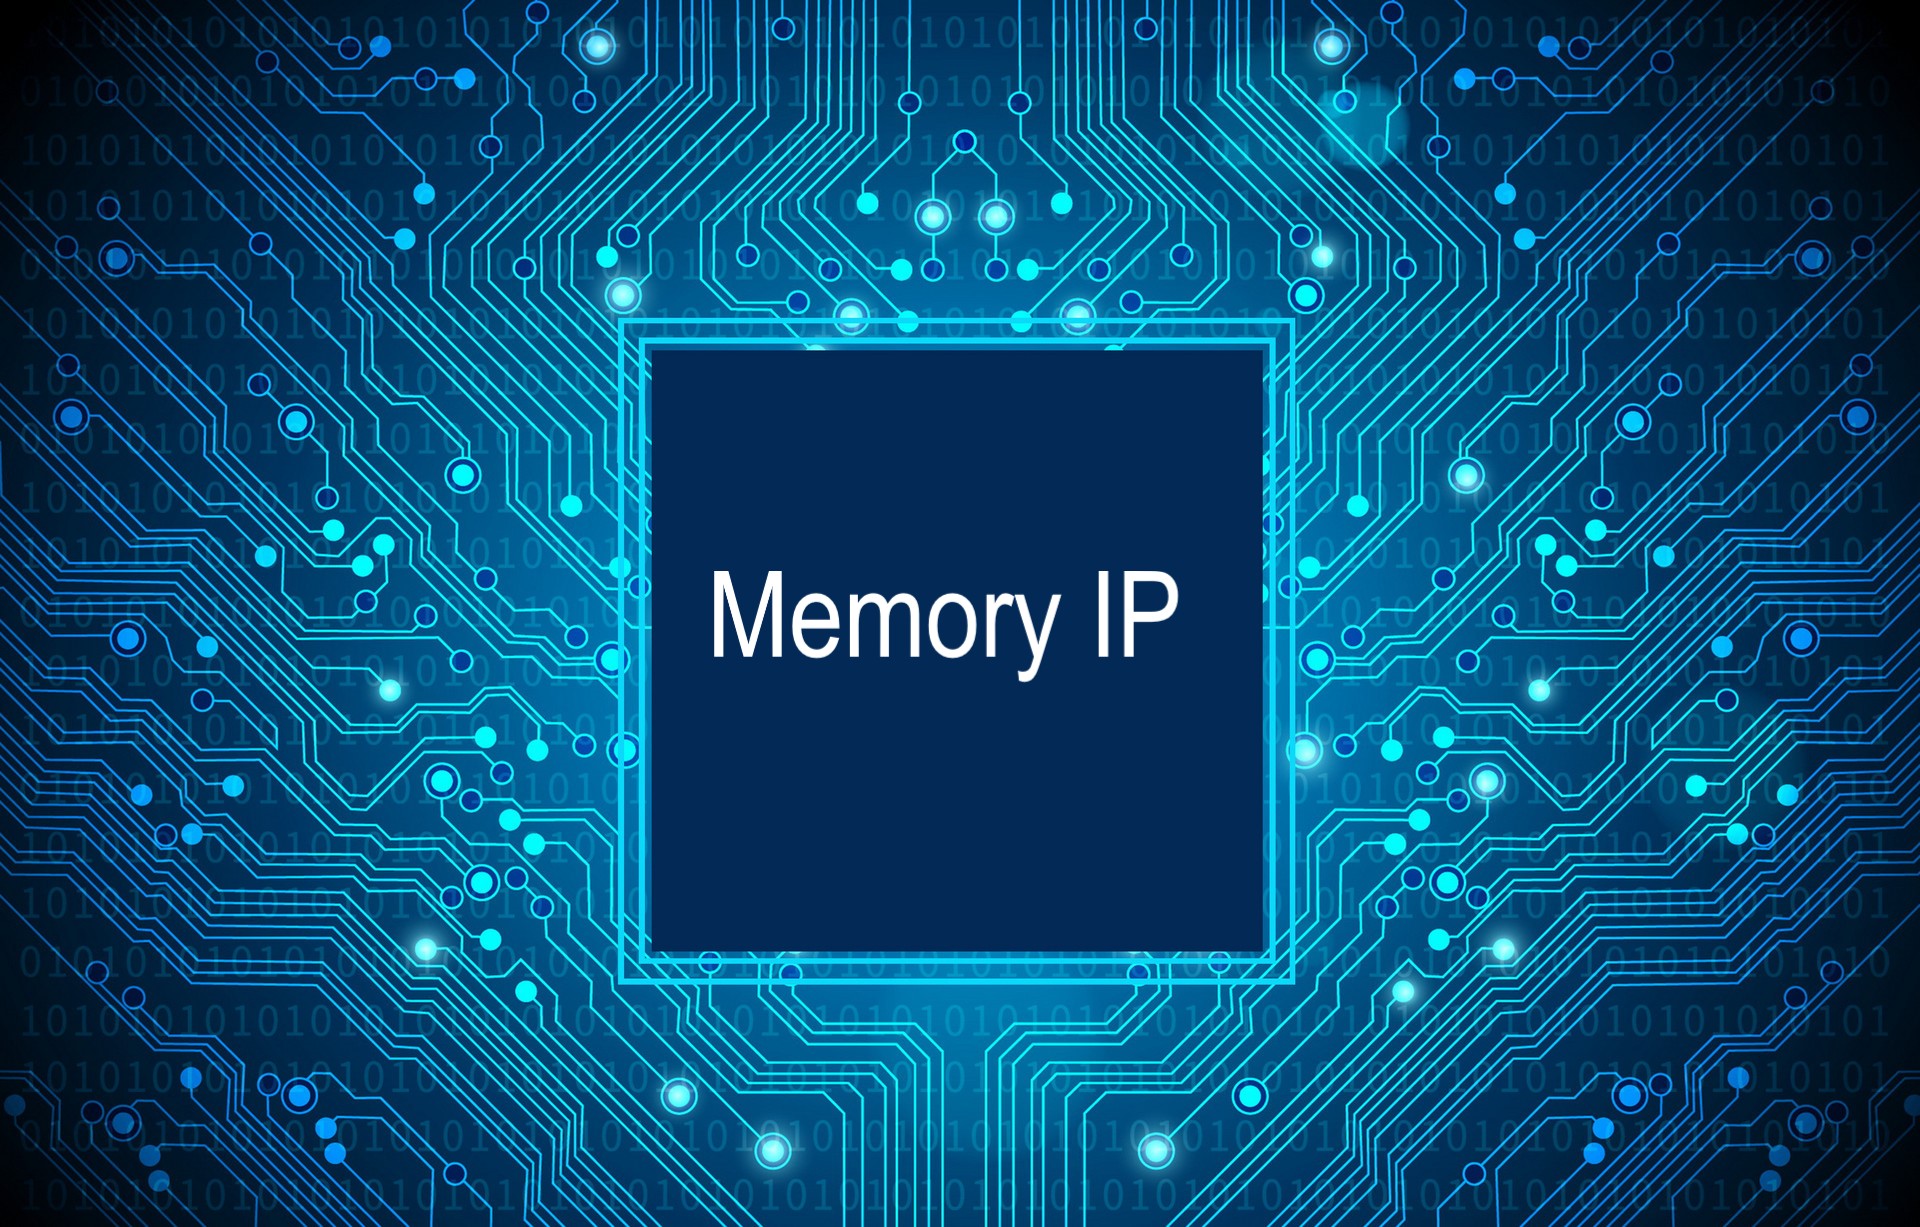 Memory IP